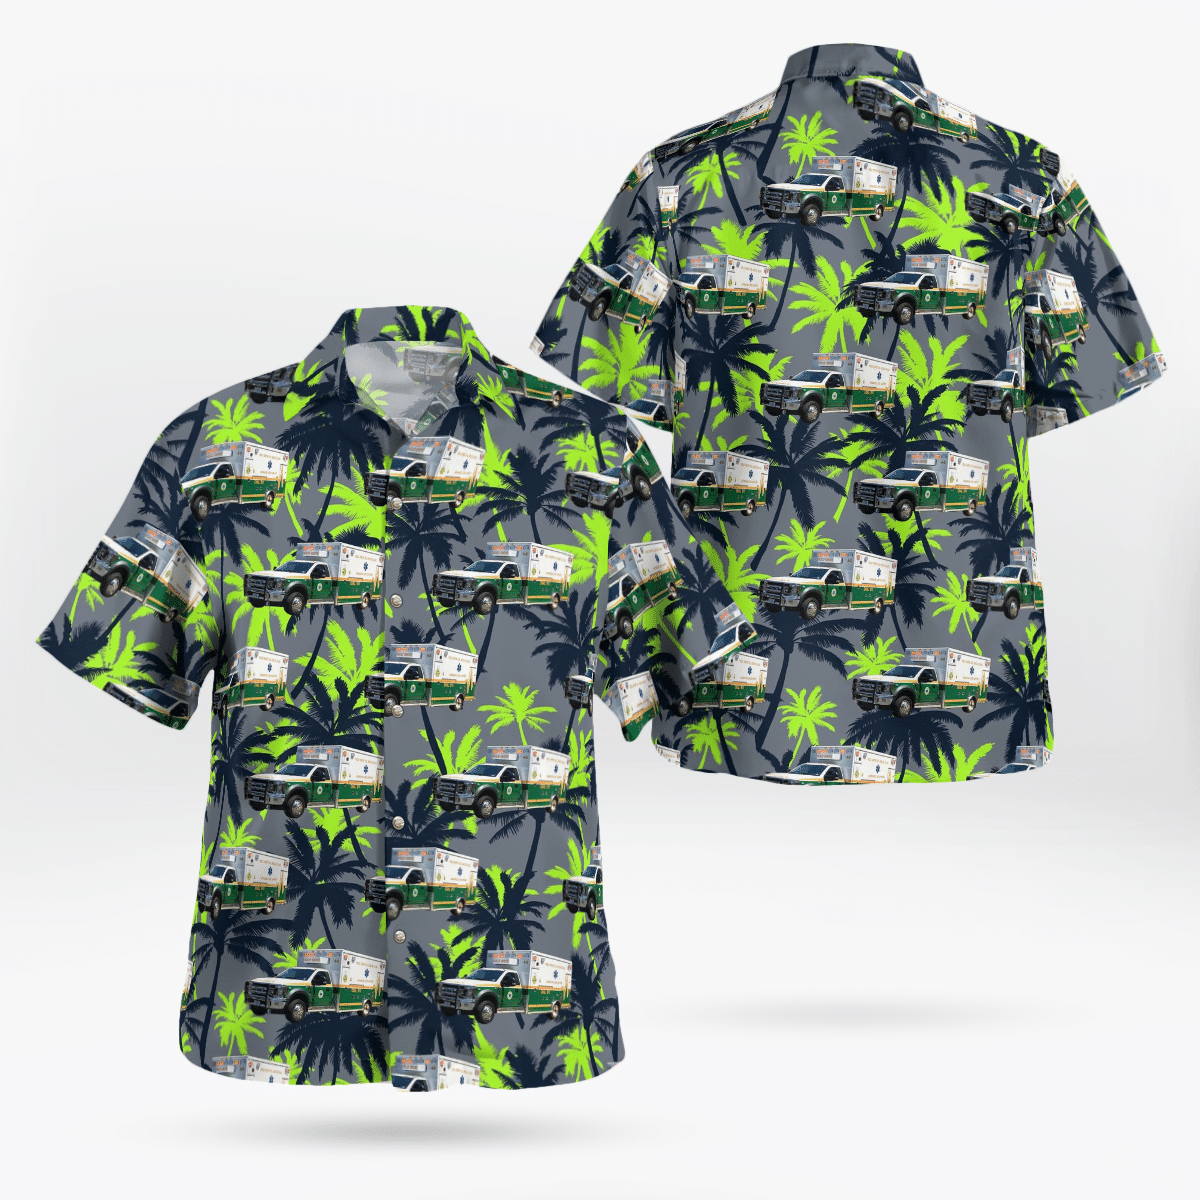 Best Hawaiian shirts 2022 284